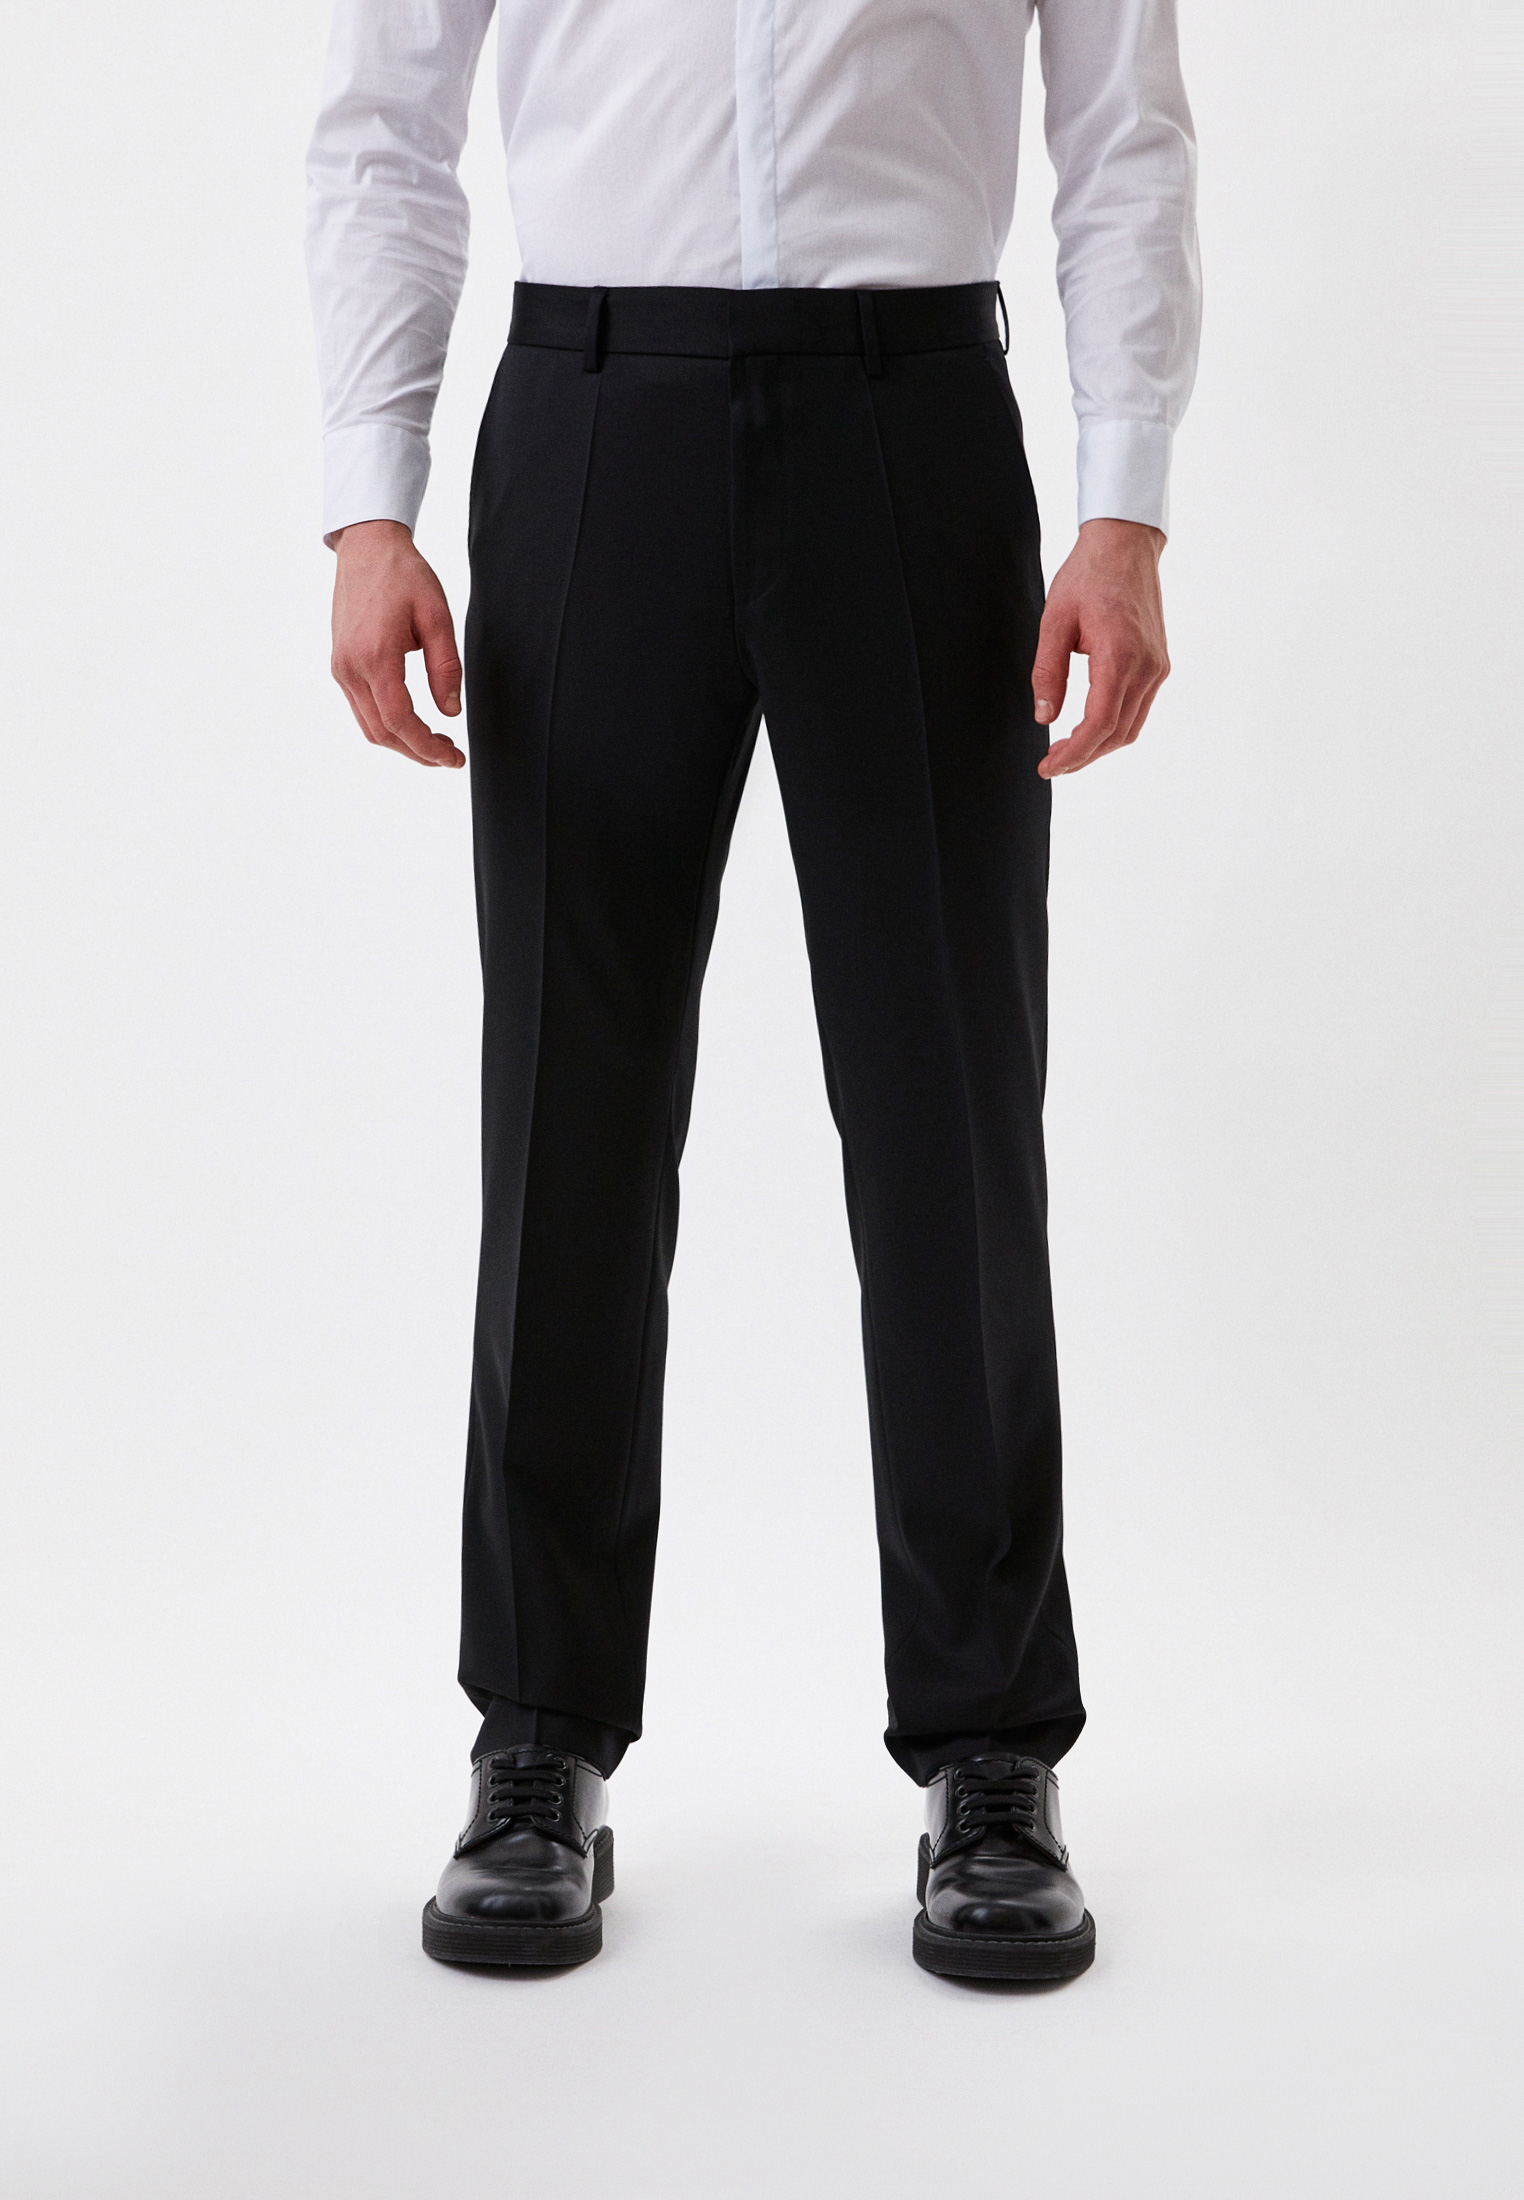 Мужские классические брюки Boss (Босс) 50469183: изображение 1